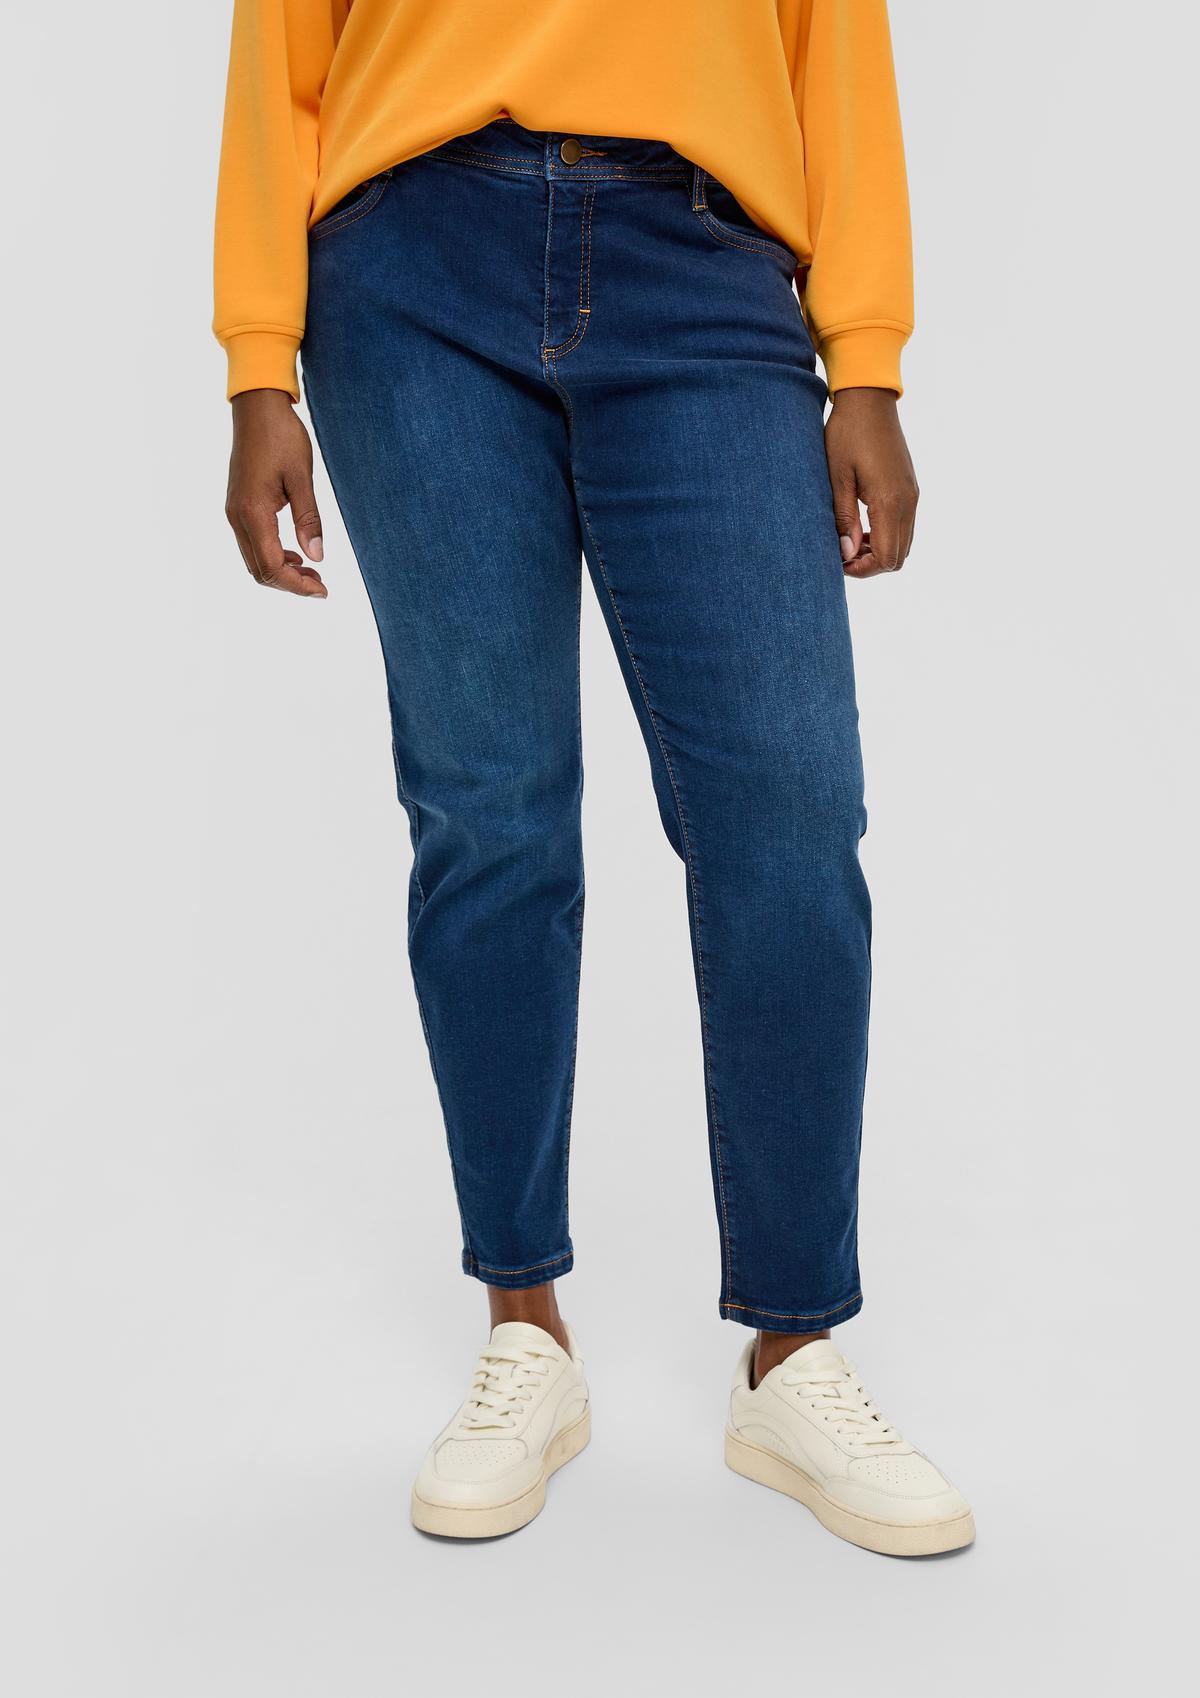 Jeans hlače / kroj Relaxed Fit / Mid Rise / ozke hlačnice